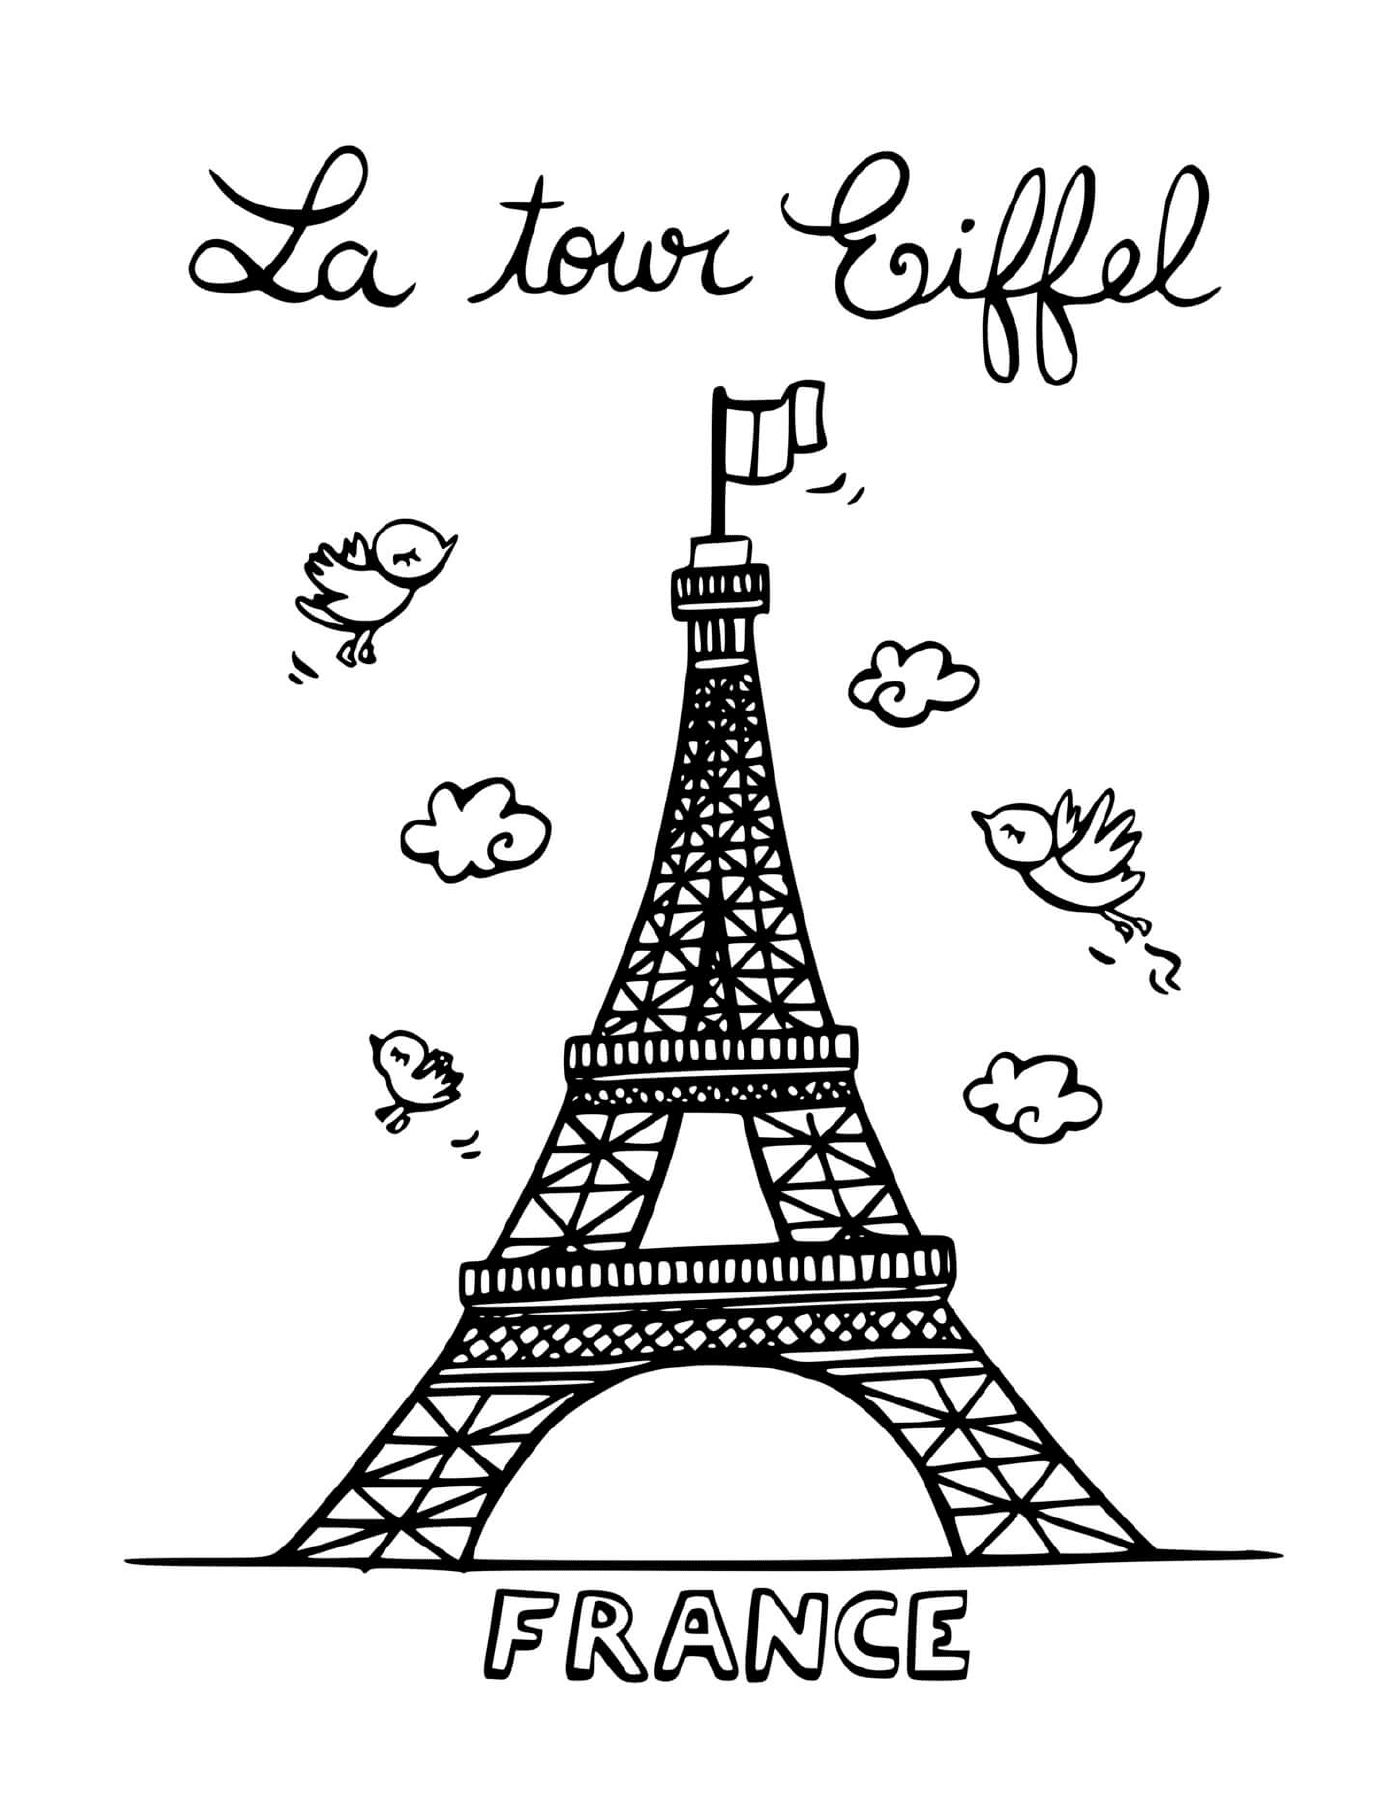   La tour Eiffel de Paris en France 